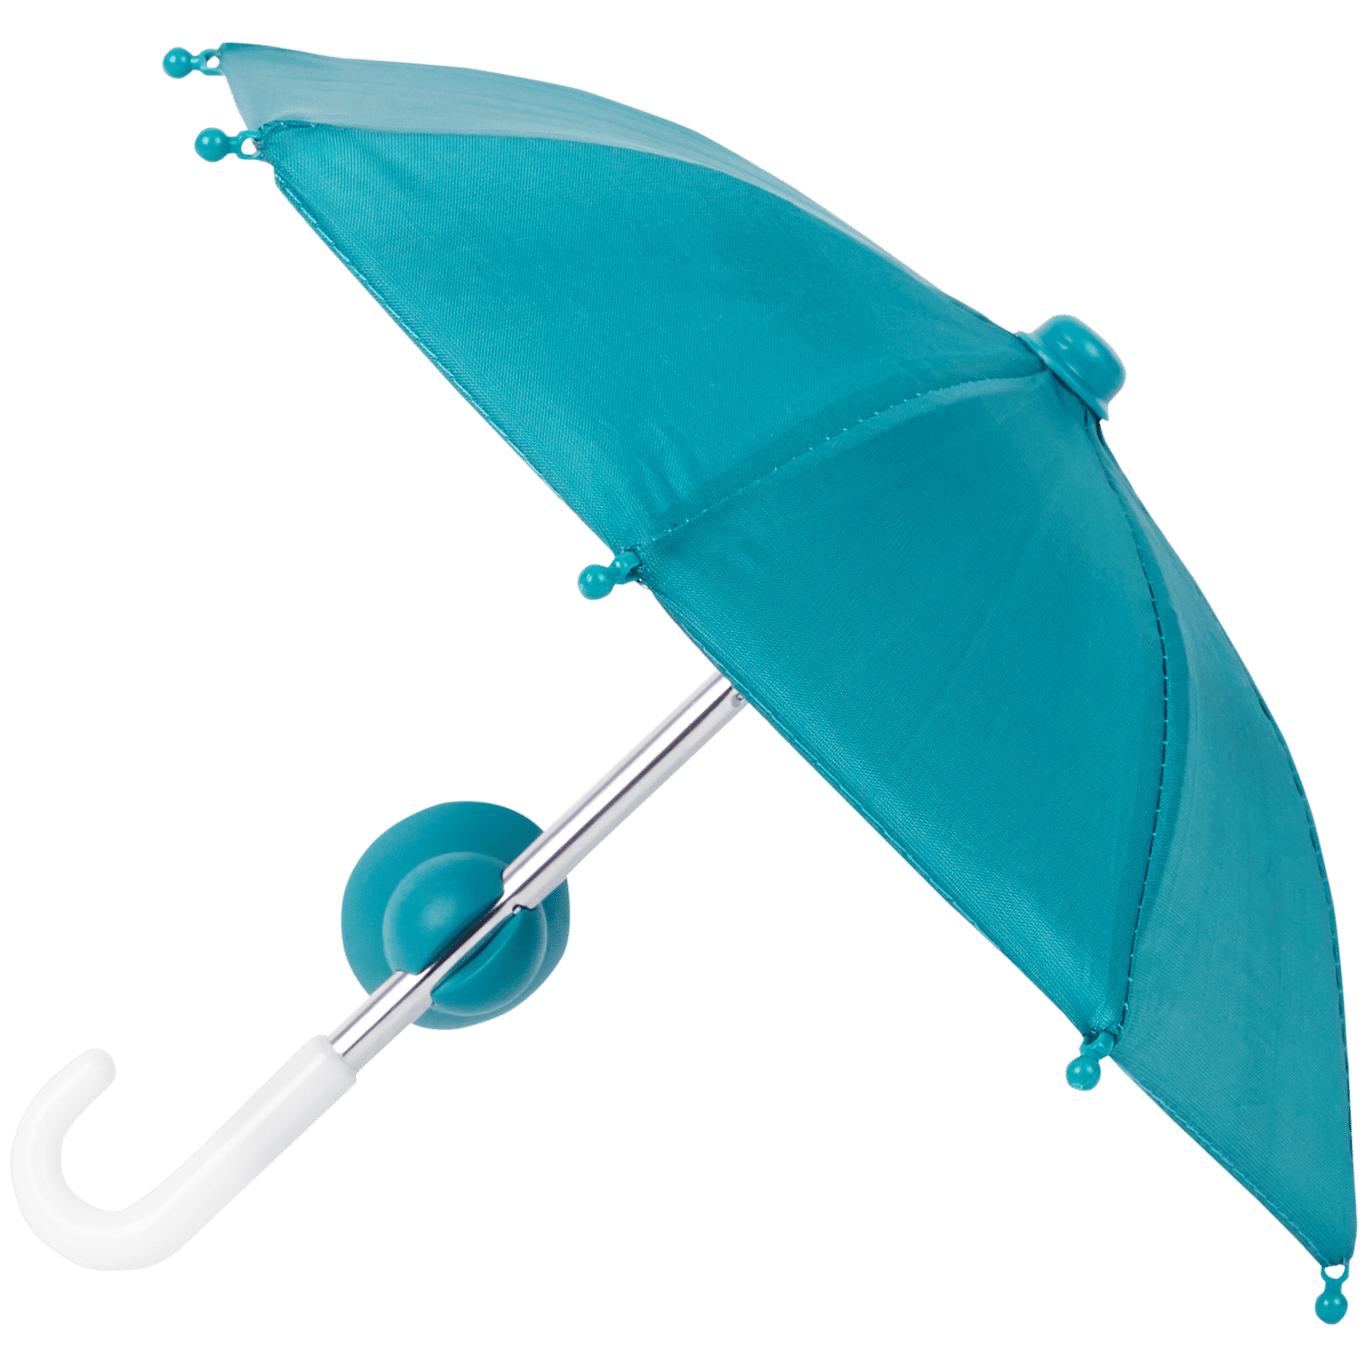 Smartphone-Regenschirm